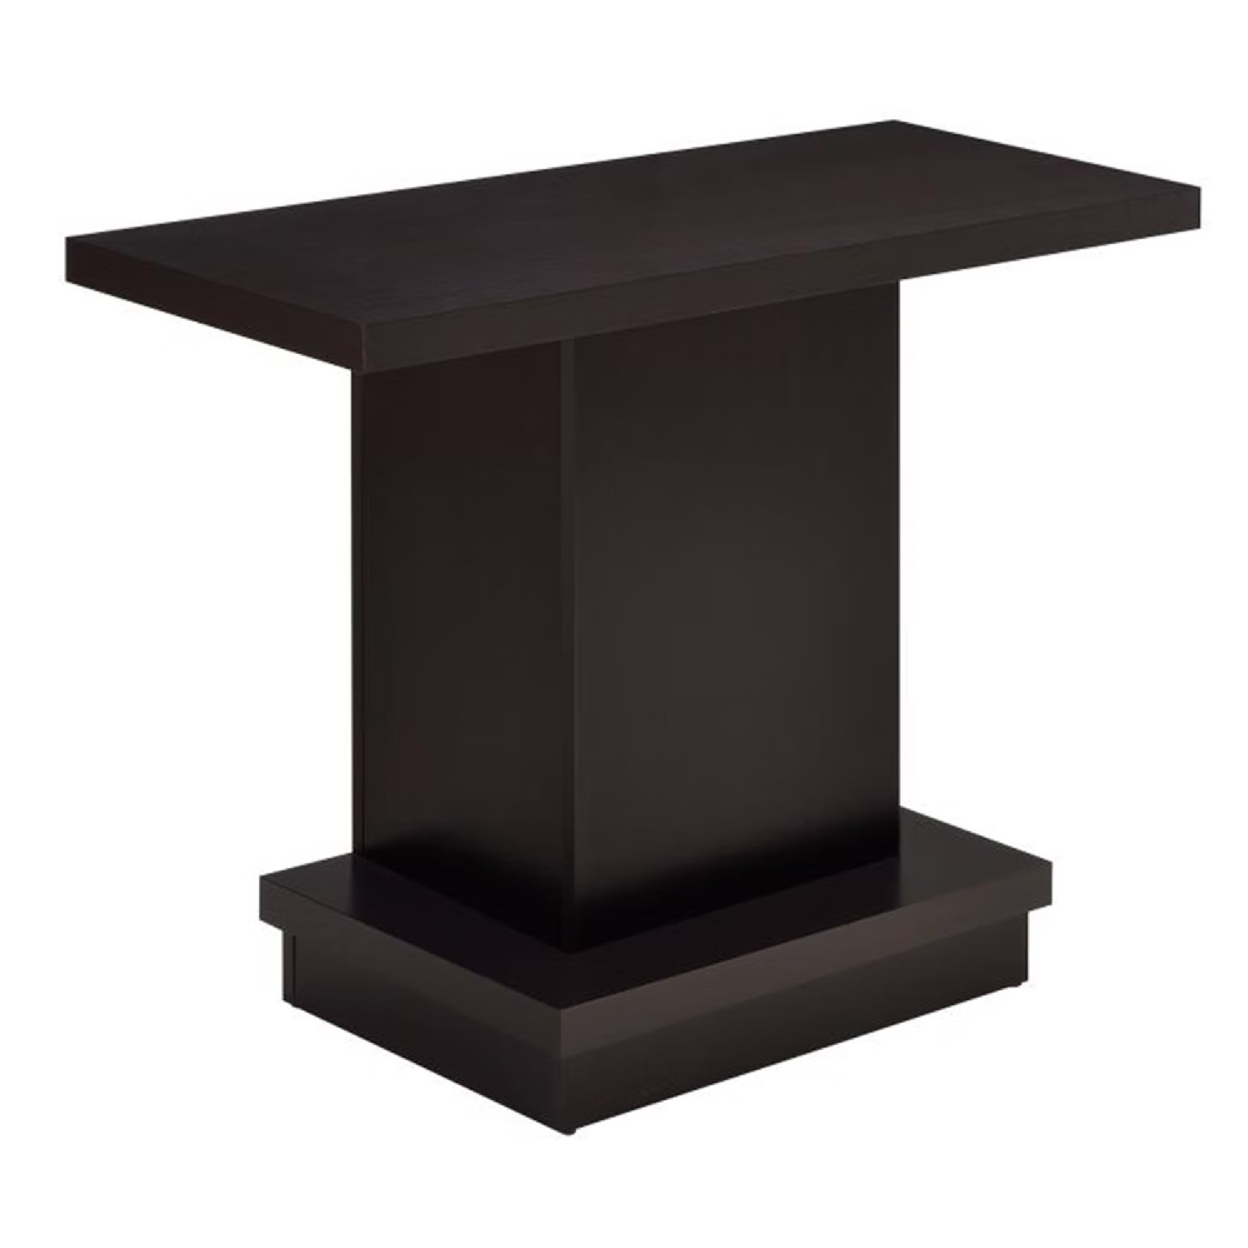 Contemporary Sofa Table With Pedestal Base, Cappuccino Brown- Saltoro Sherpi